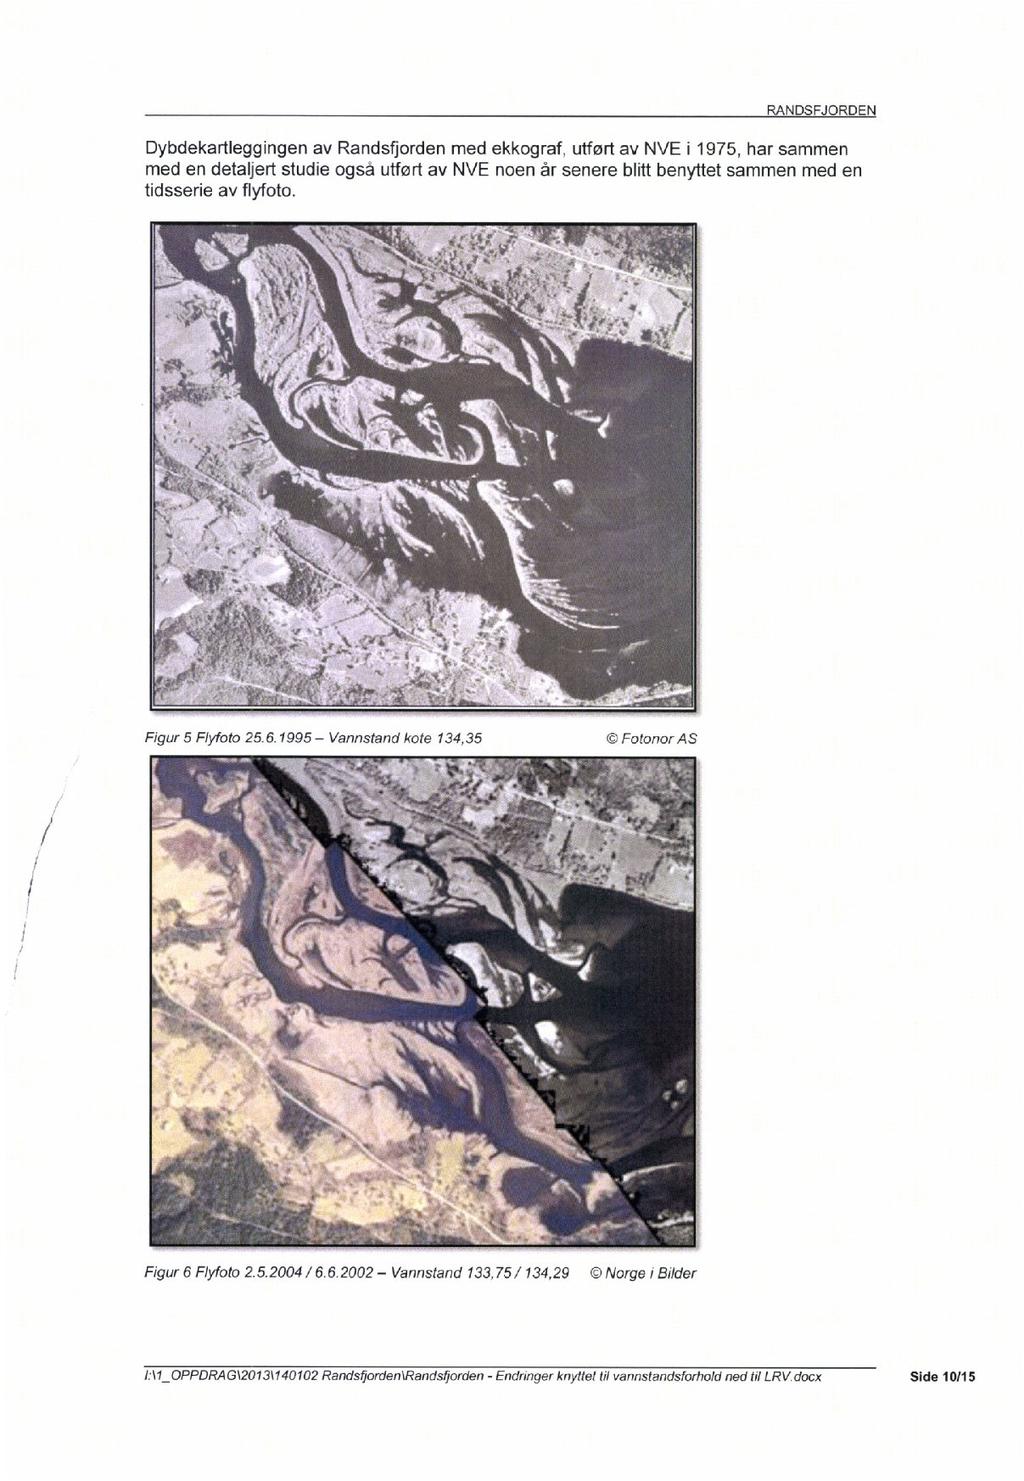 Dybdekartleggingen av Randsfjorden med ekkograf, utført av NVE i 1975, har sammen med en detaljert studie også utført av NVE noen år senere blitt benyttet sammen med en tidsserie av flyfoto.